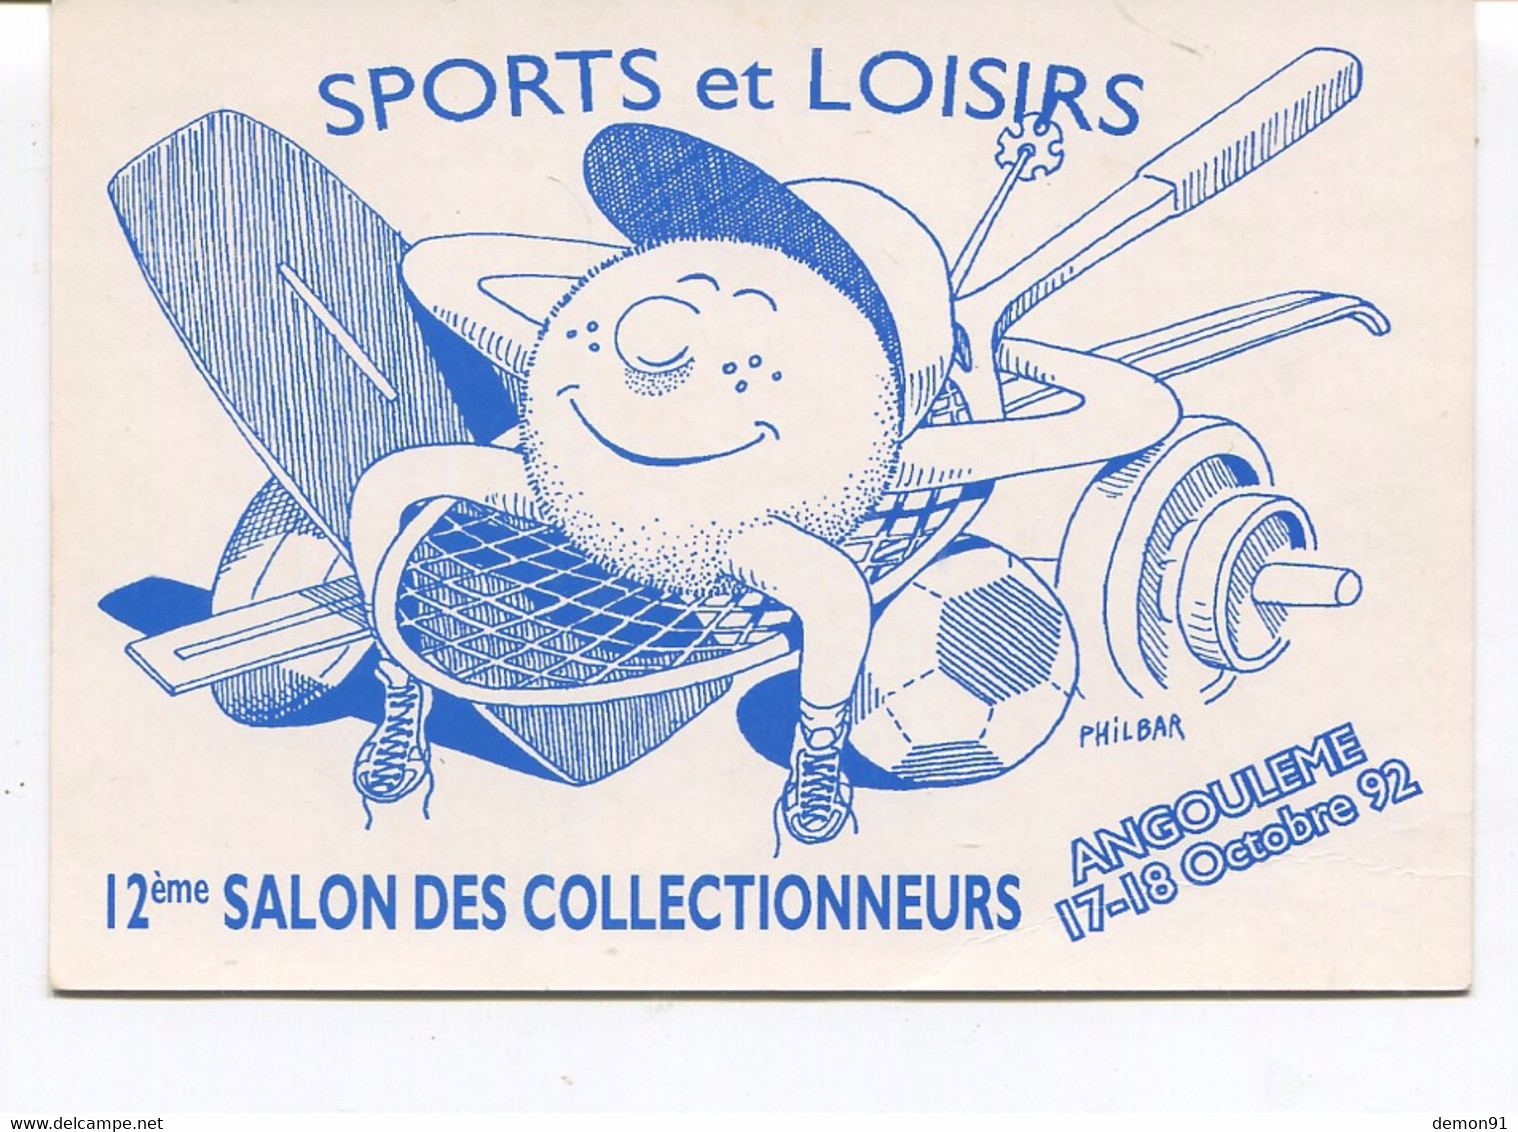 ANGOULEME - 12ème Salon Des Collectionneurs 17,18 Octobre 1992 - Bourses & Salons De Collections